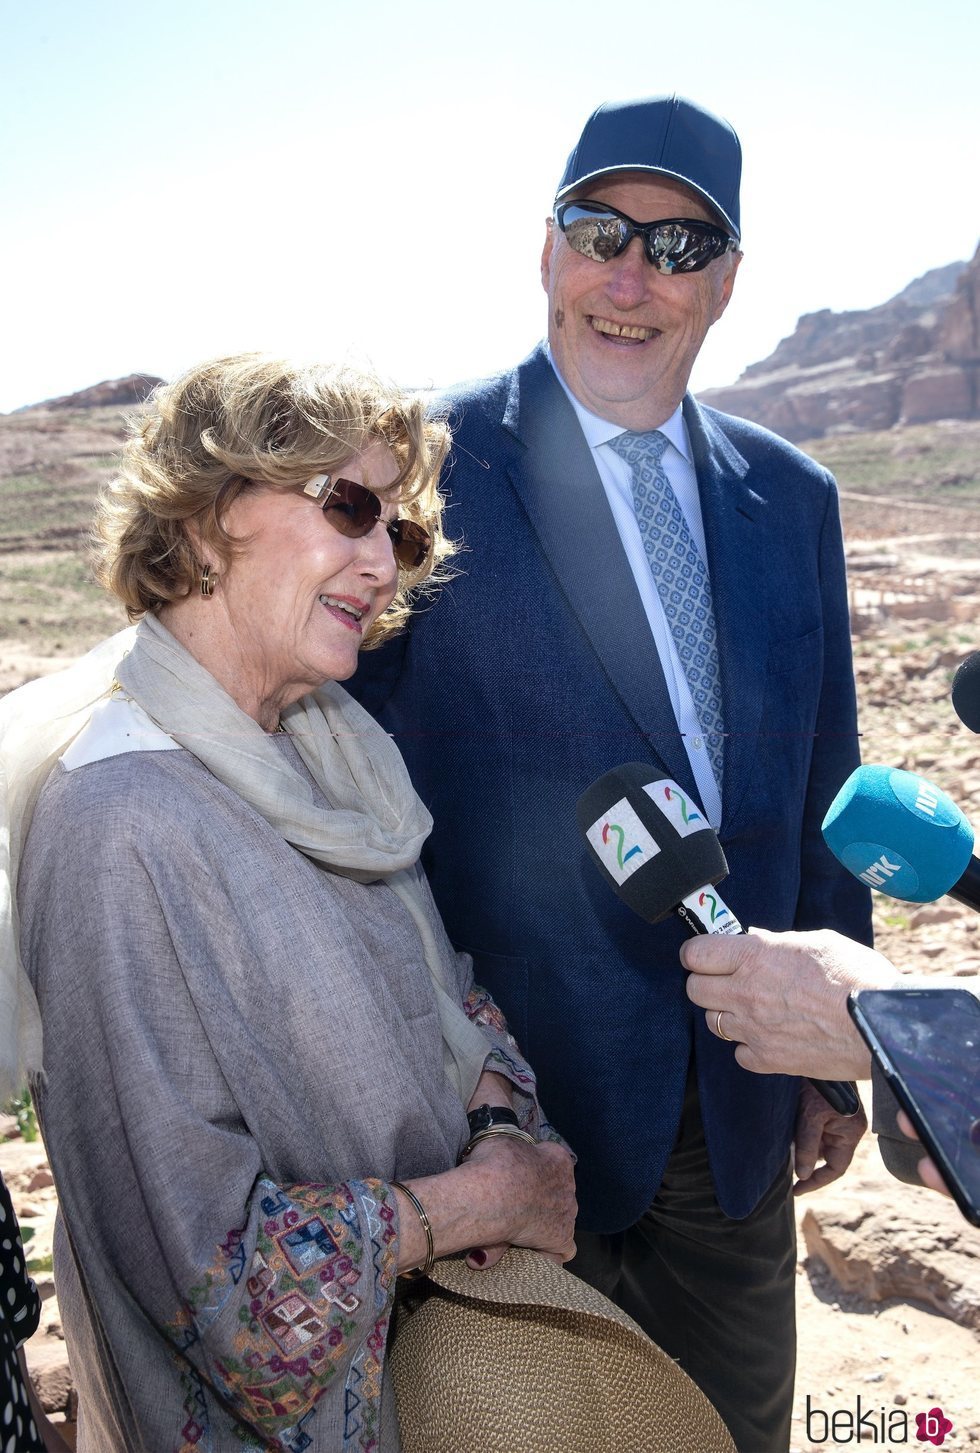 Harald y Sonia de Noruega atienden a la prensa en Petra